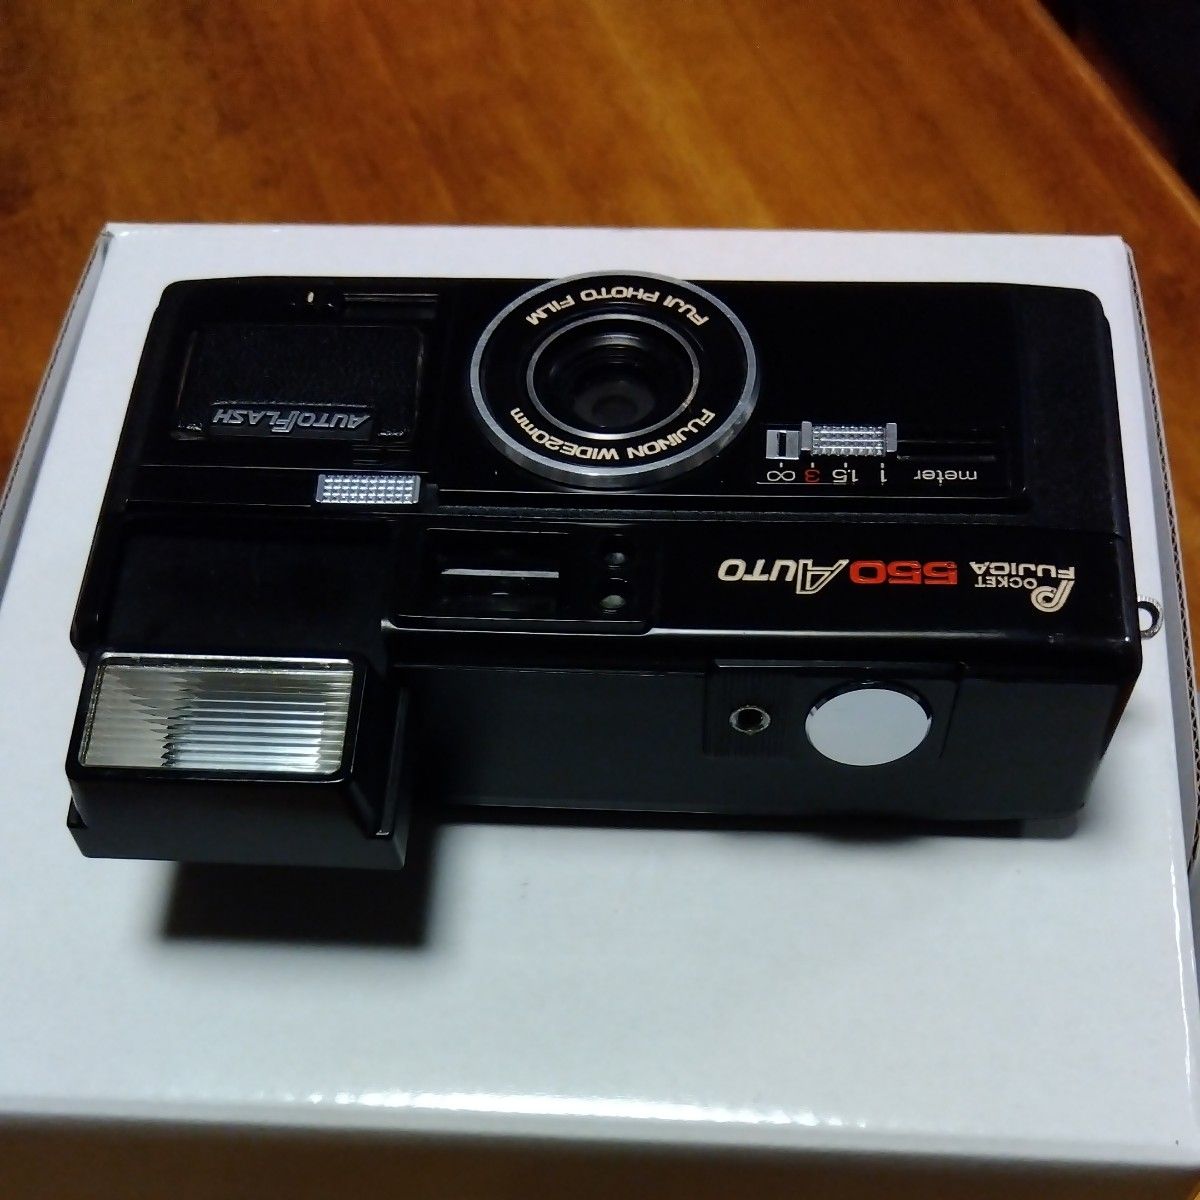 カメラ　ビンテージ　昭和レトロ　当時物　フジカラー コンパクトフィルムカメラ　POCKET FUJCA 550 AUTO　